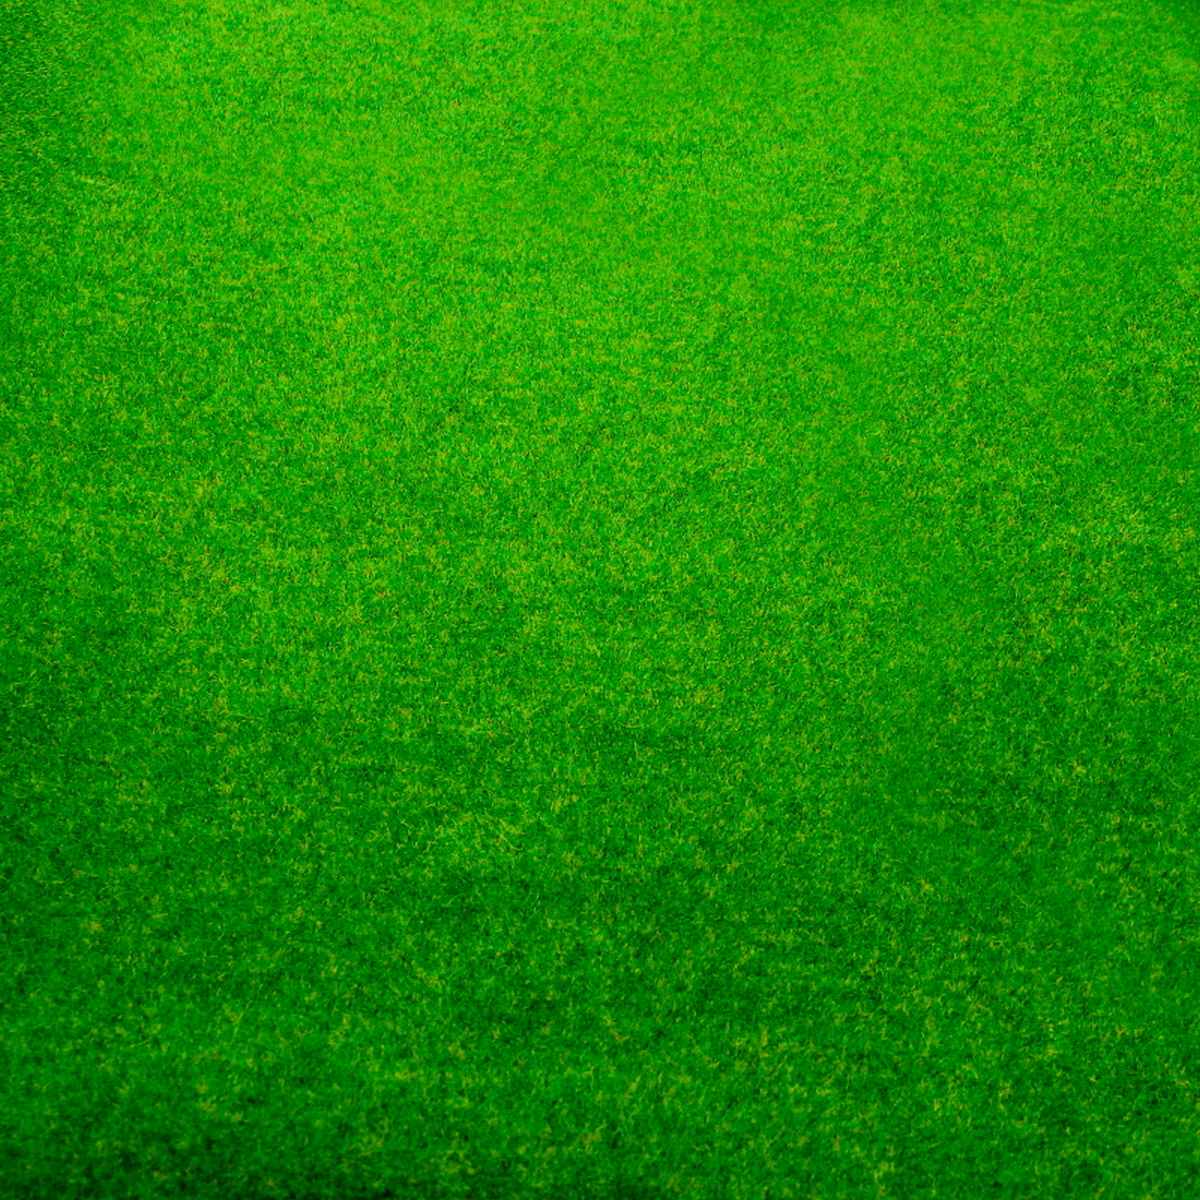 jags-mumbai Artificial Grass Garden Grass Roll 50CM X 250CM Light Green